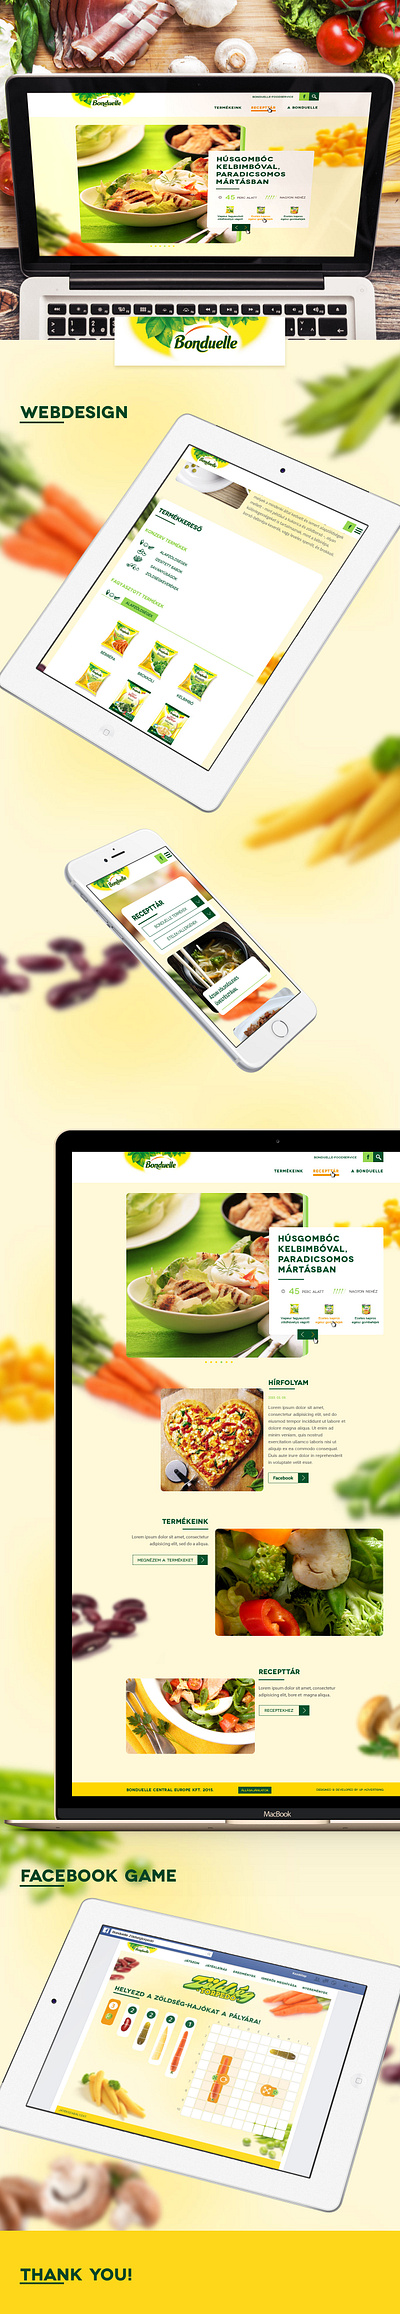 Bonduelle bonduelle fmcg vegetables webdesign